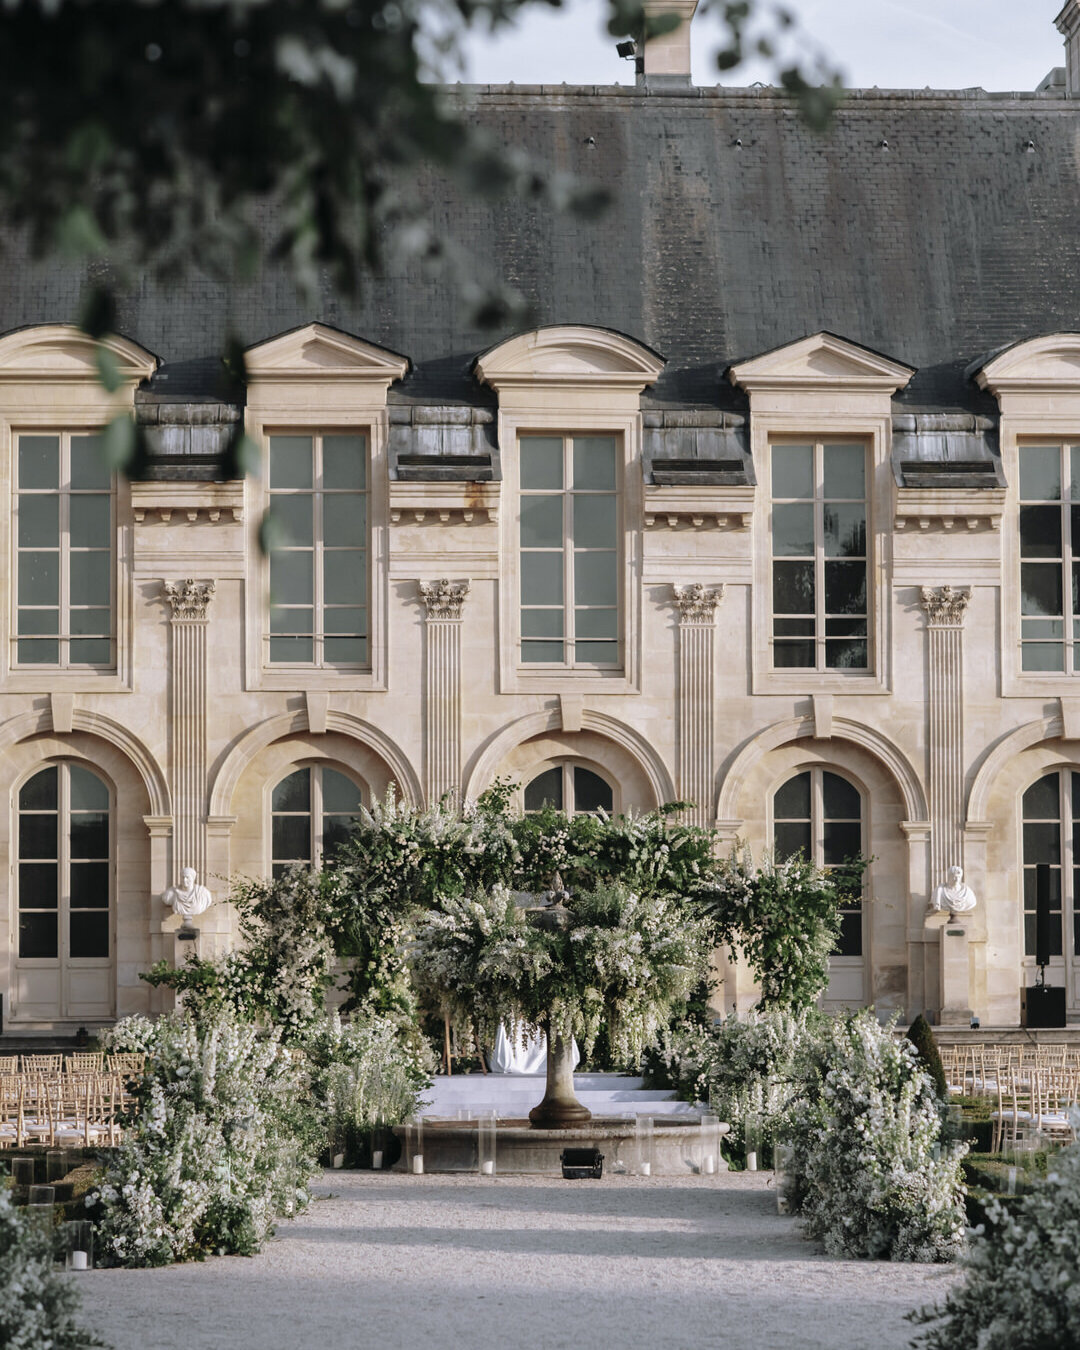 Paris Destination Wedding at Chateau de Chantilly by Alejandra Poupel Events windows musée rodin 